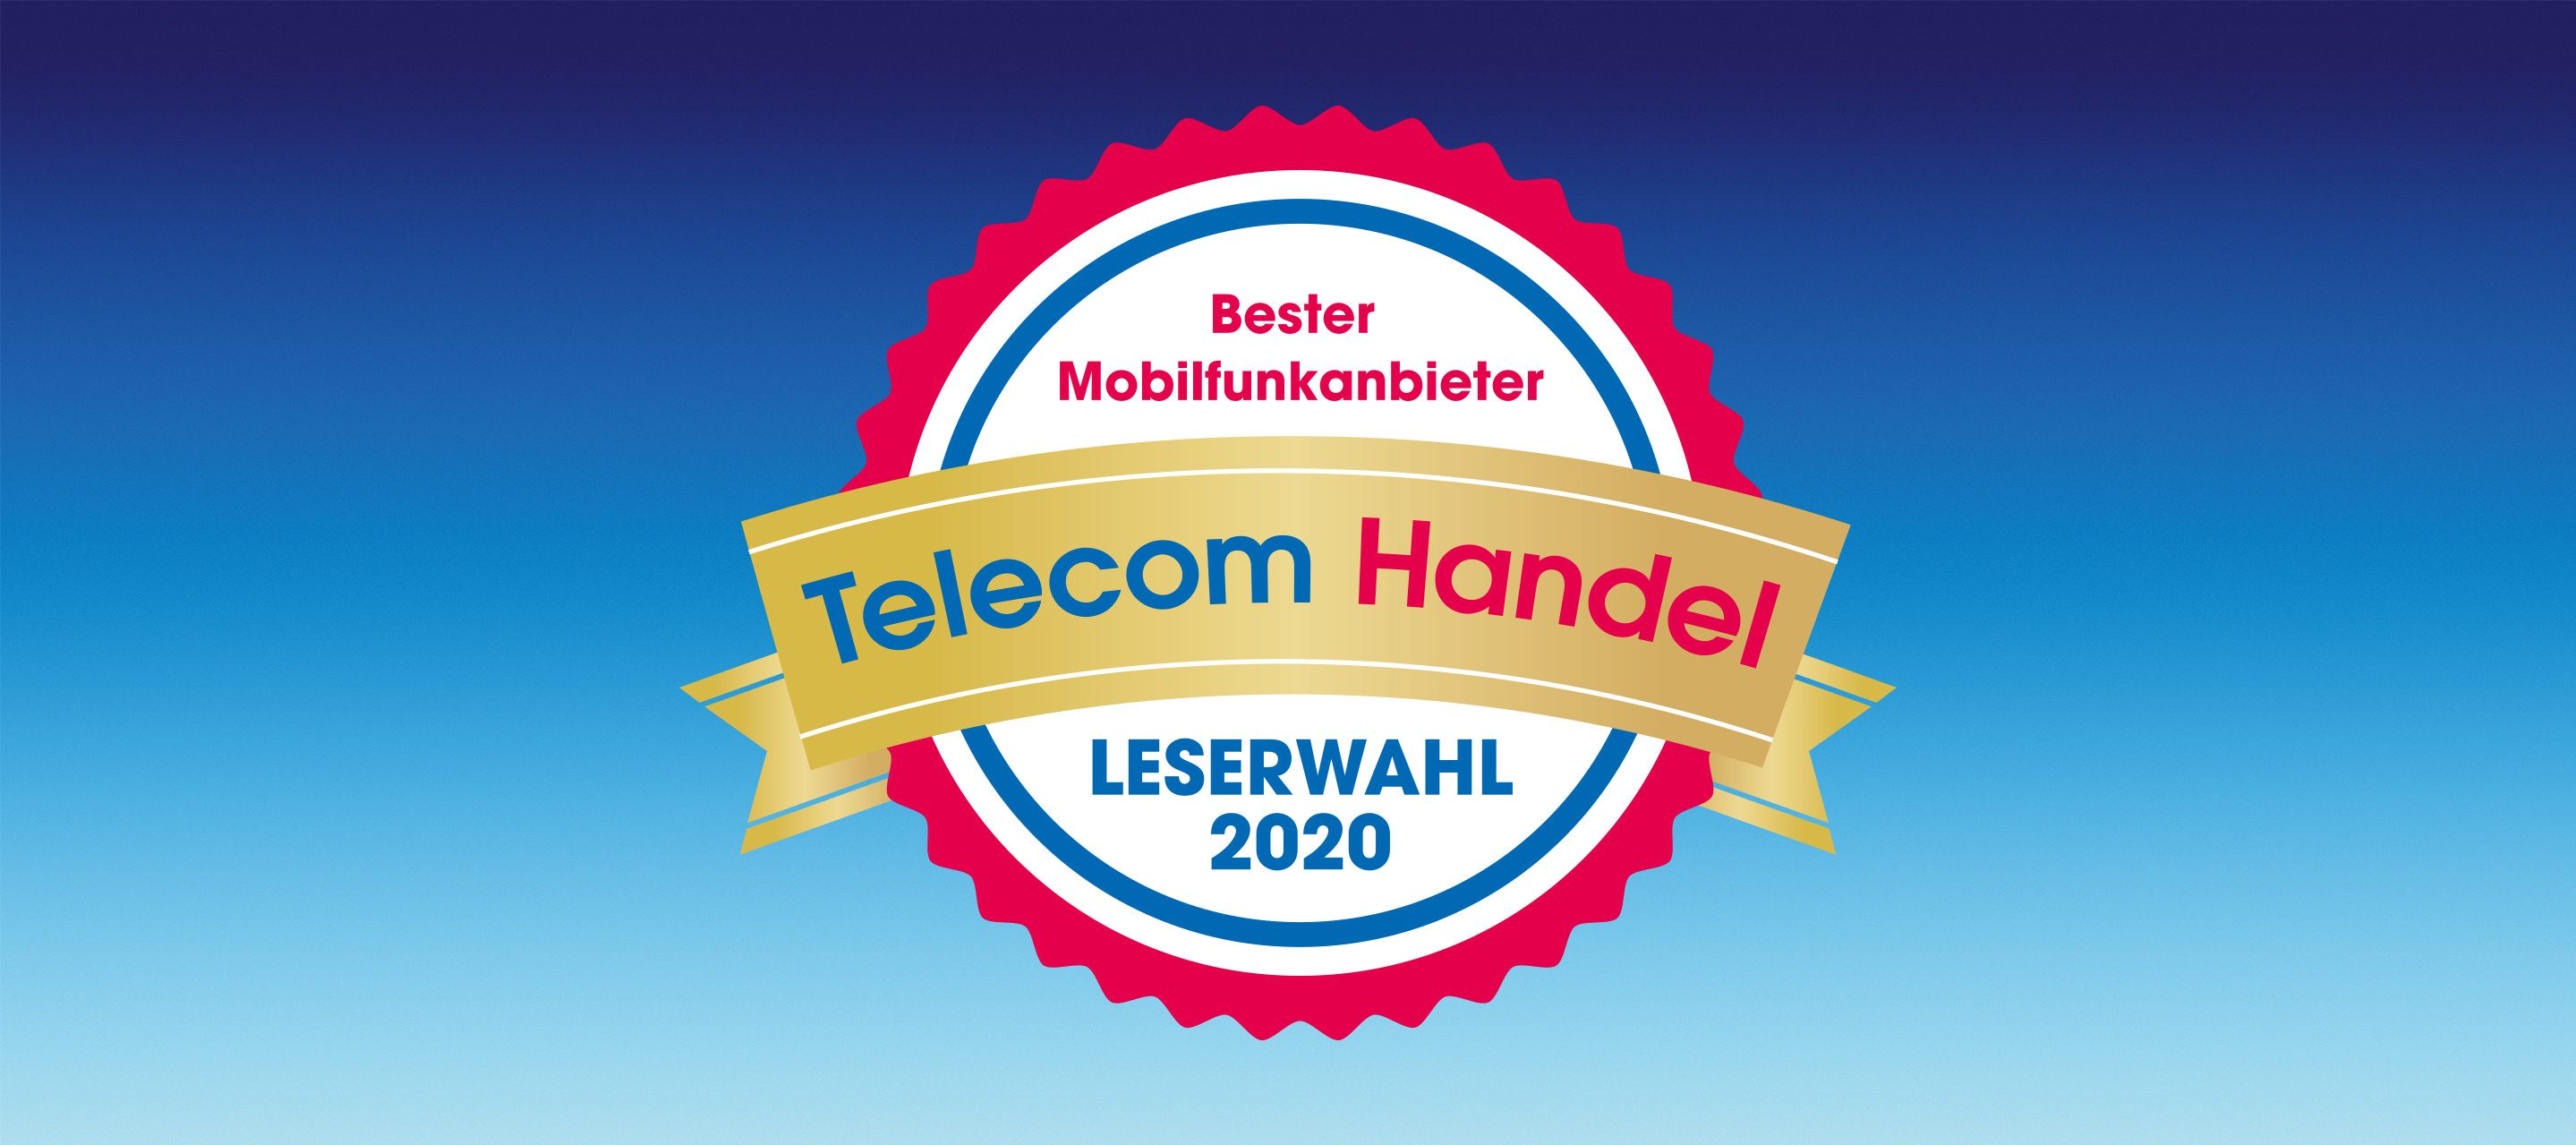 O₂ zum besten Mobilfunkanbieter 2020 gewählt bei der Telecom Handel Leserwahl